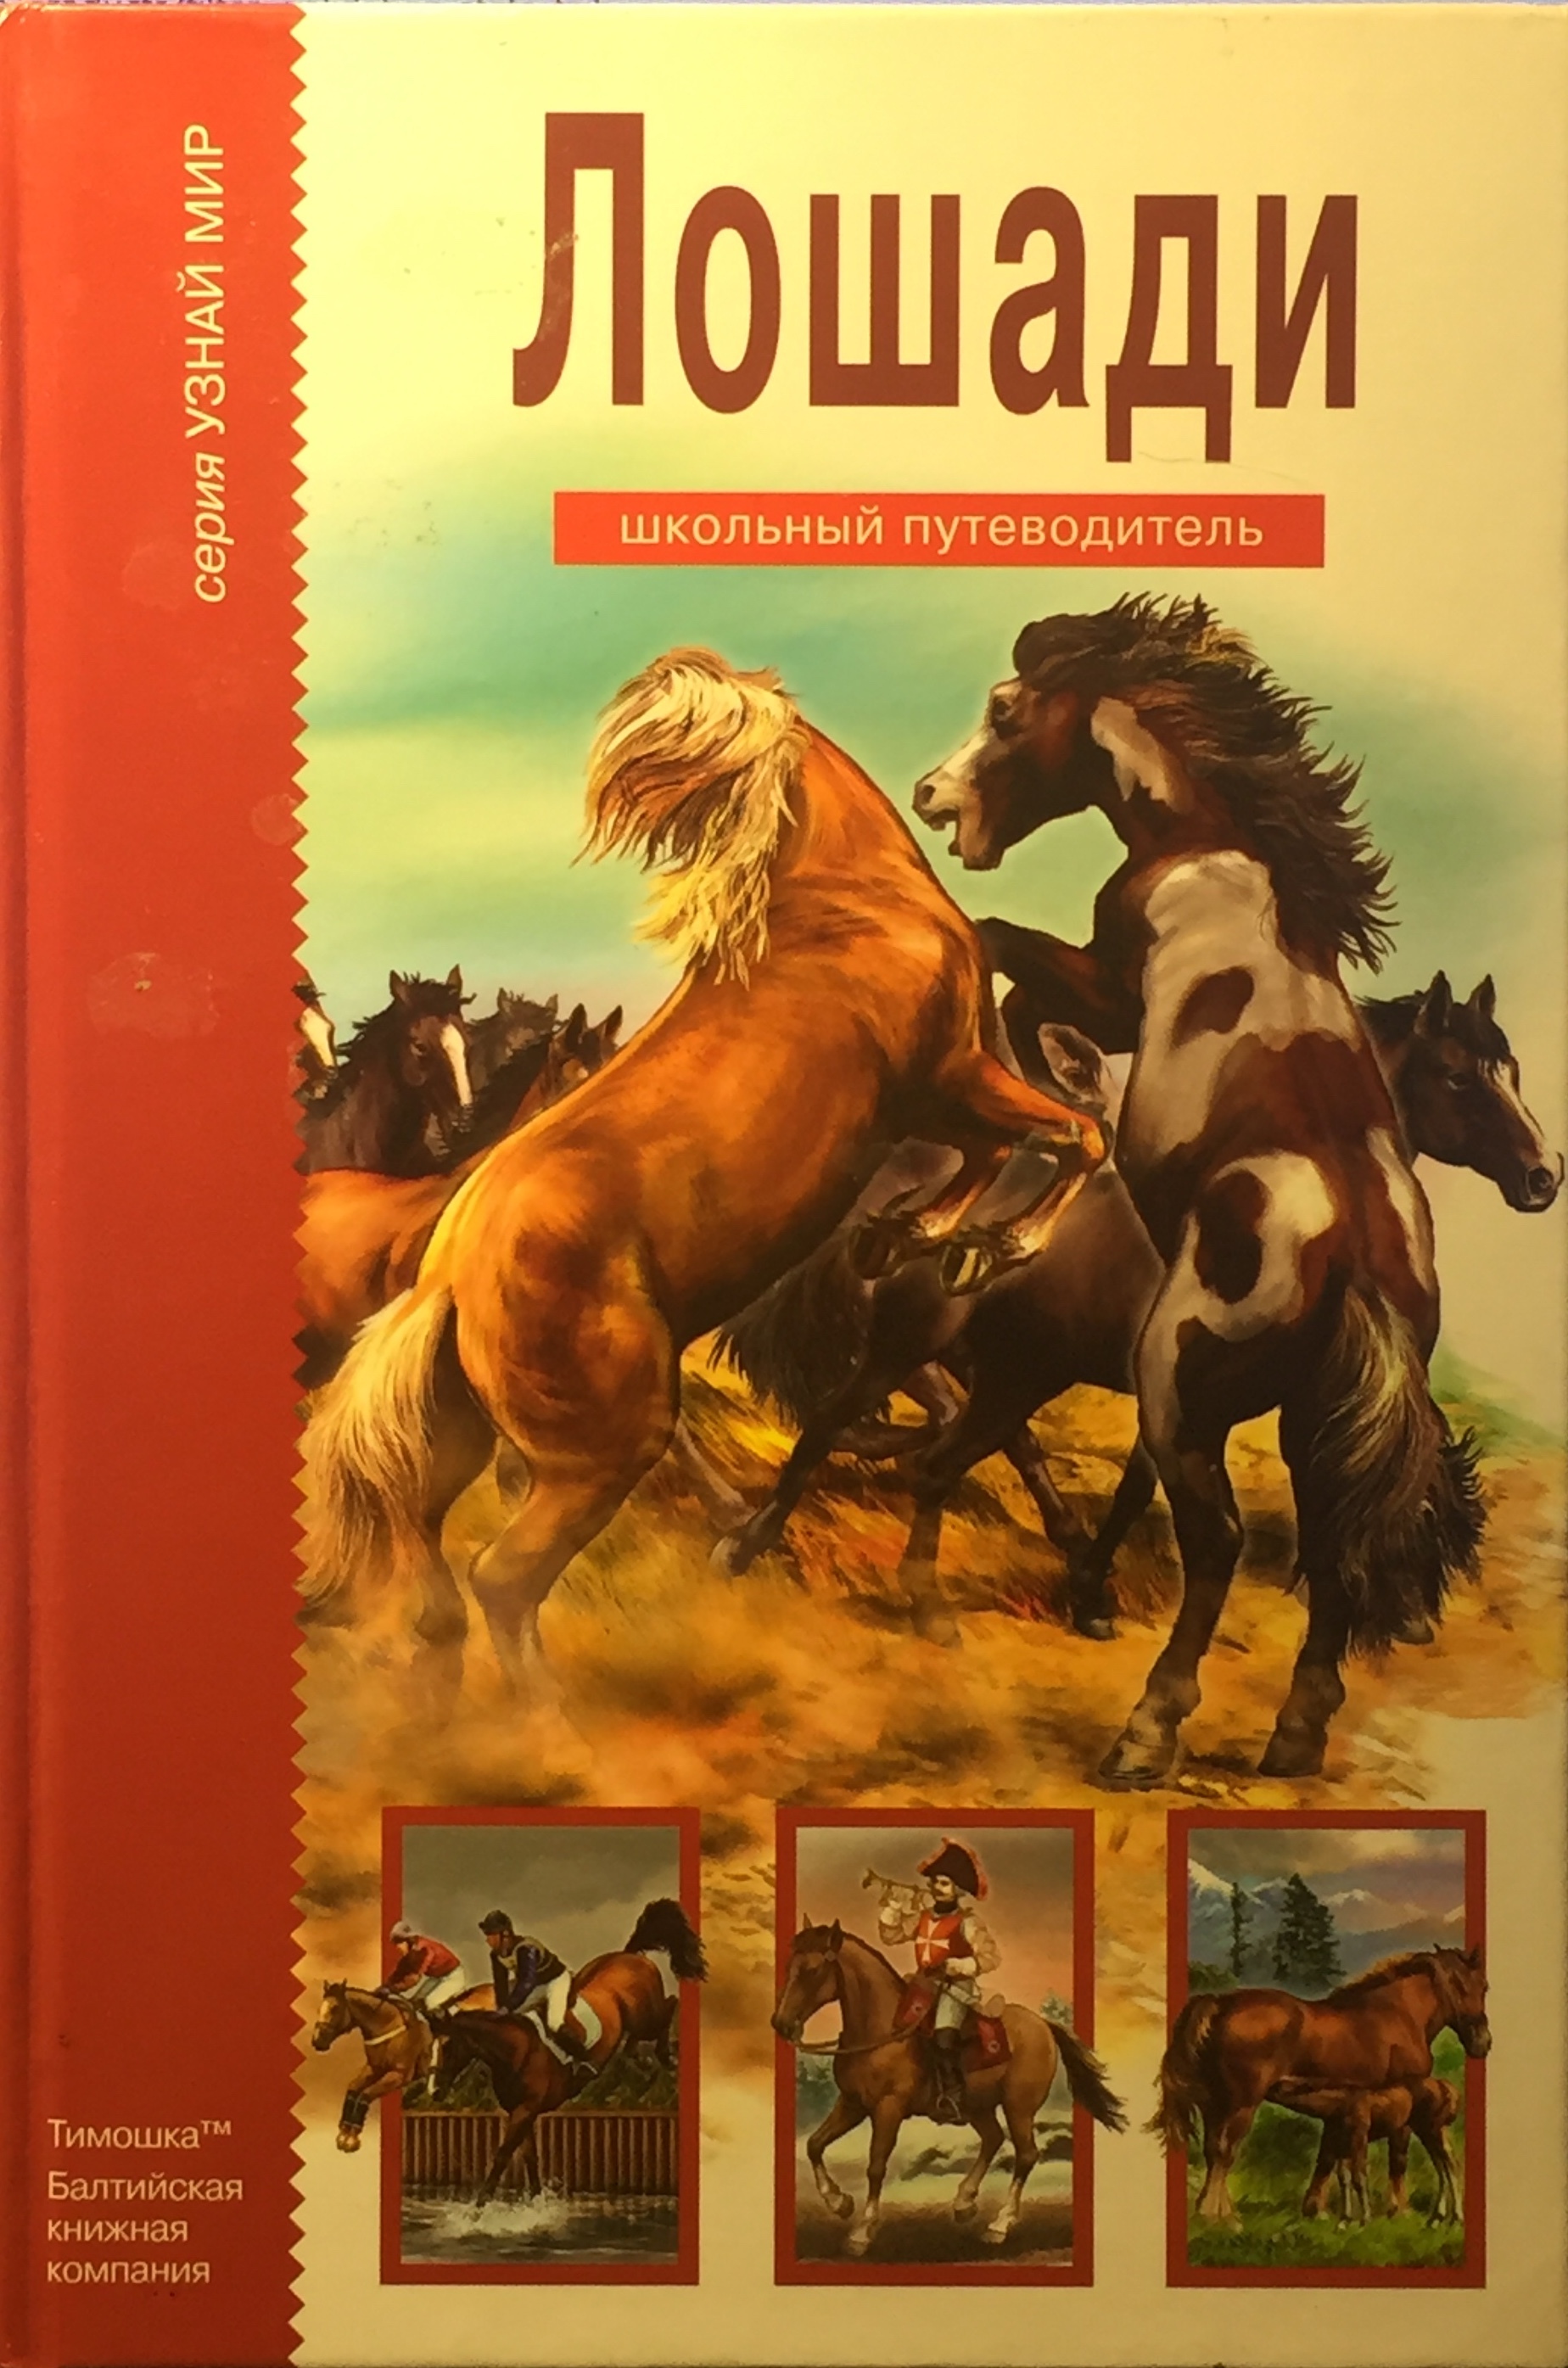 Книги верховая. Лошади. Школьный путеводитель.. Книги про лошадей. Книга о конях для детей.